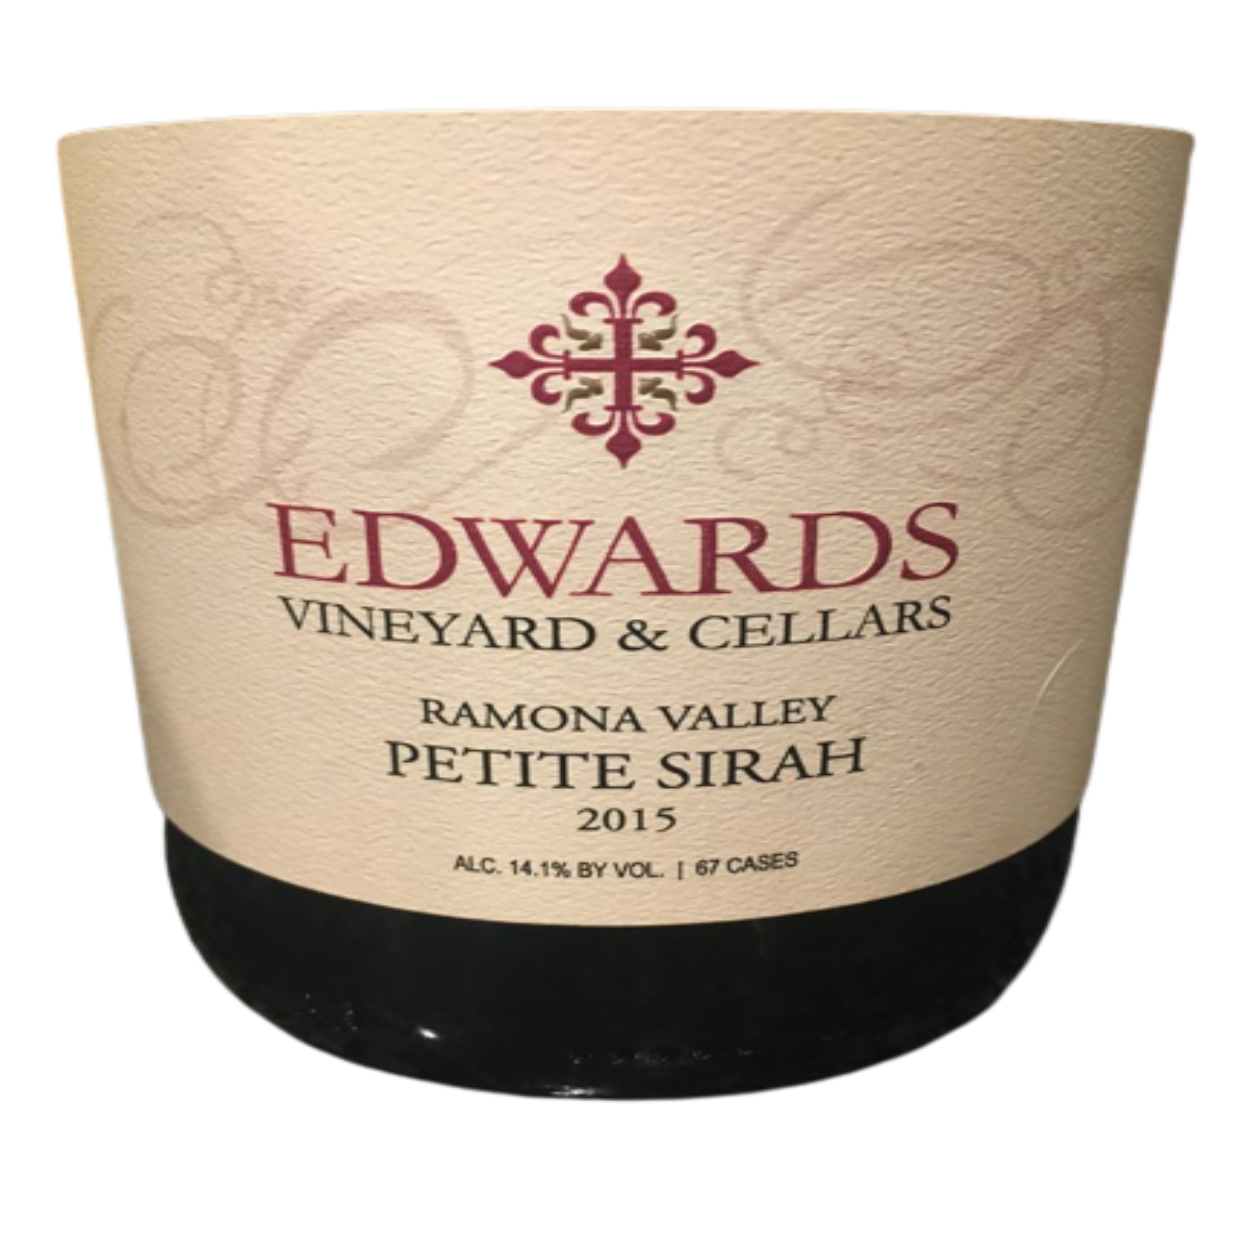 2016 Edwards Vineyard & Cellars Petite Sirah Ramona Valley